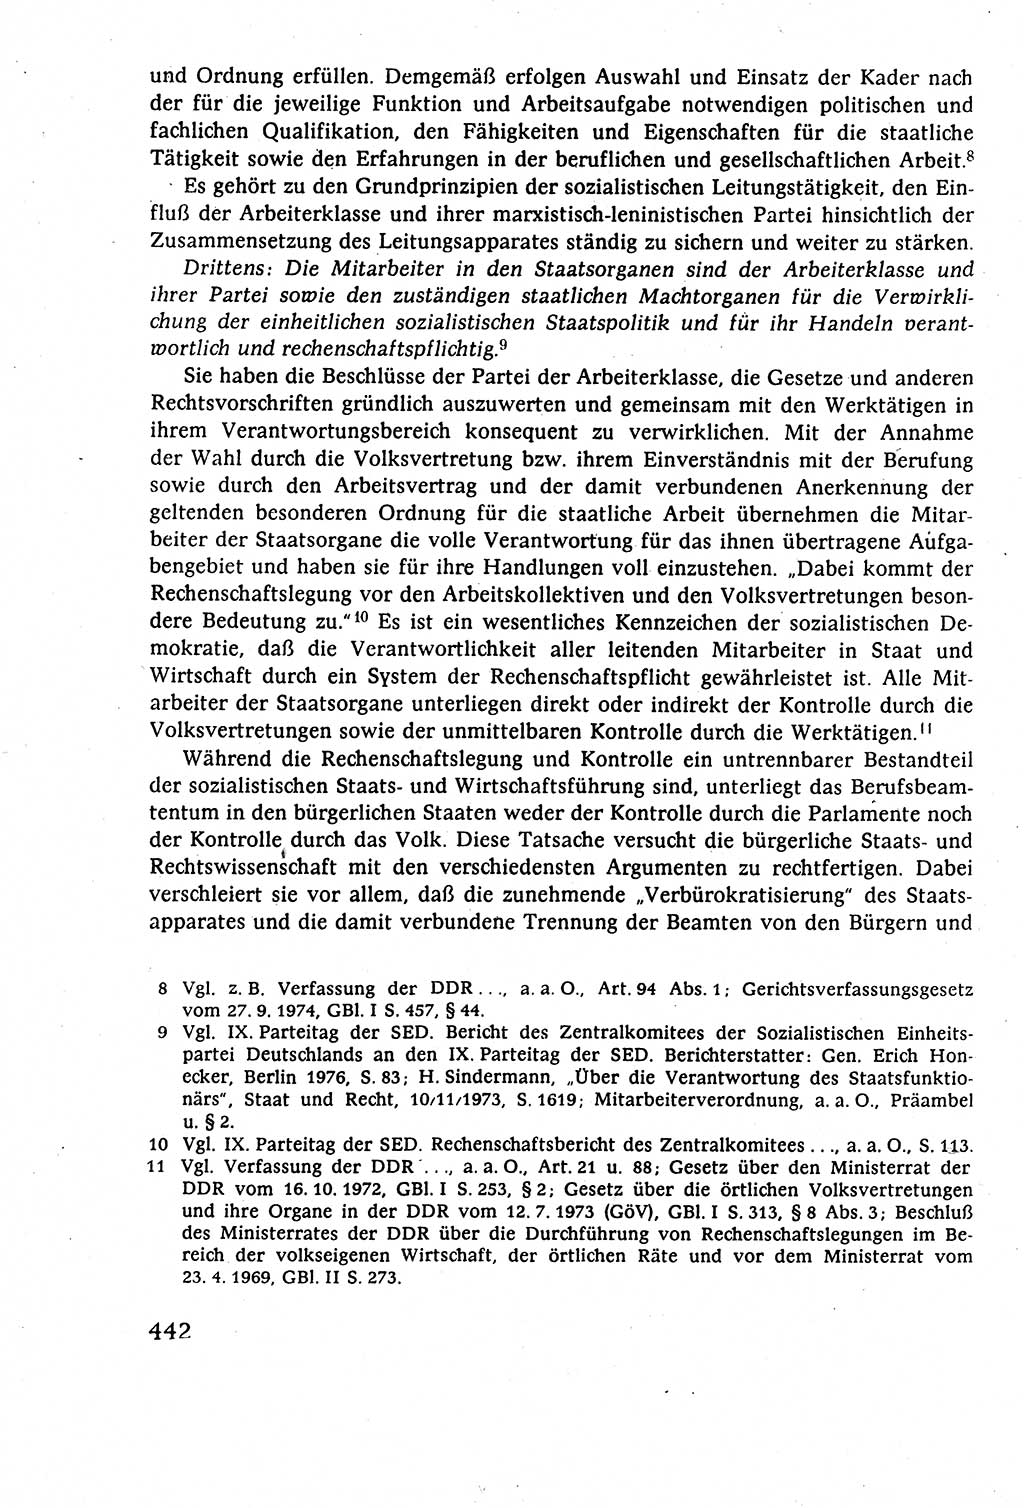 Staatsrecht der DDR (Deutsche Demokratische Republik), Lehrbuch 1977, Seite 442 (St.-R. DDR Lb. 1977, S. 442)